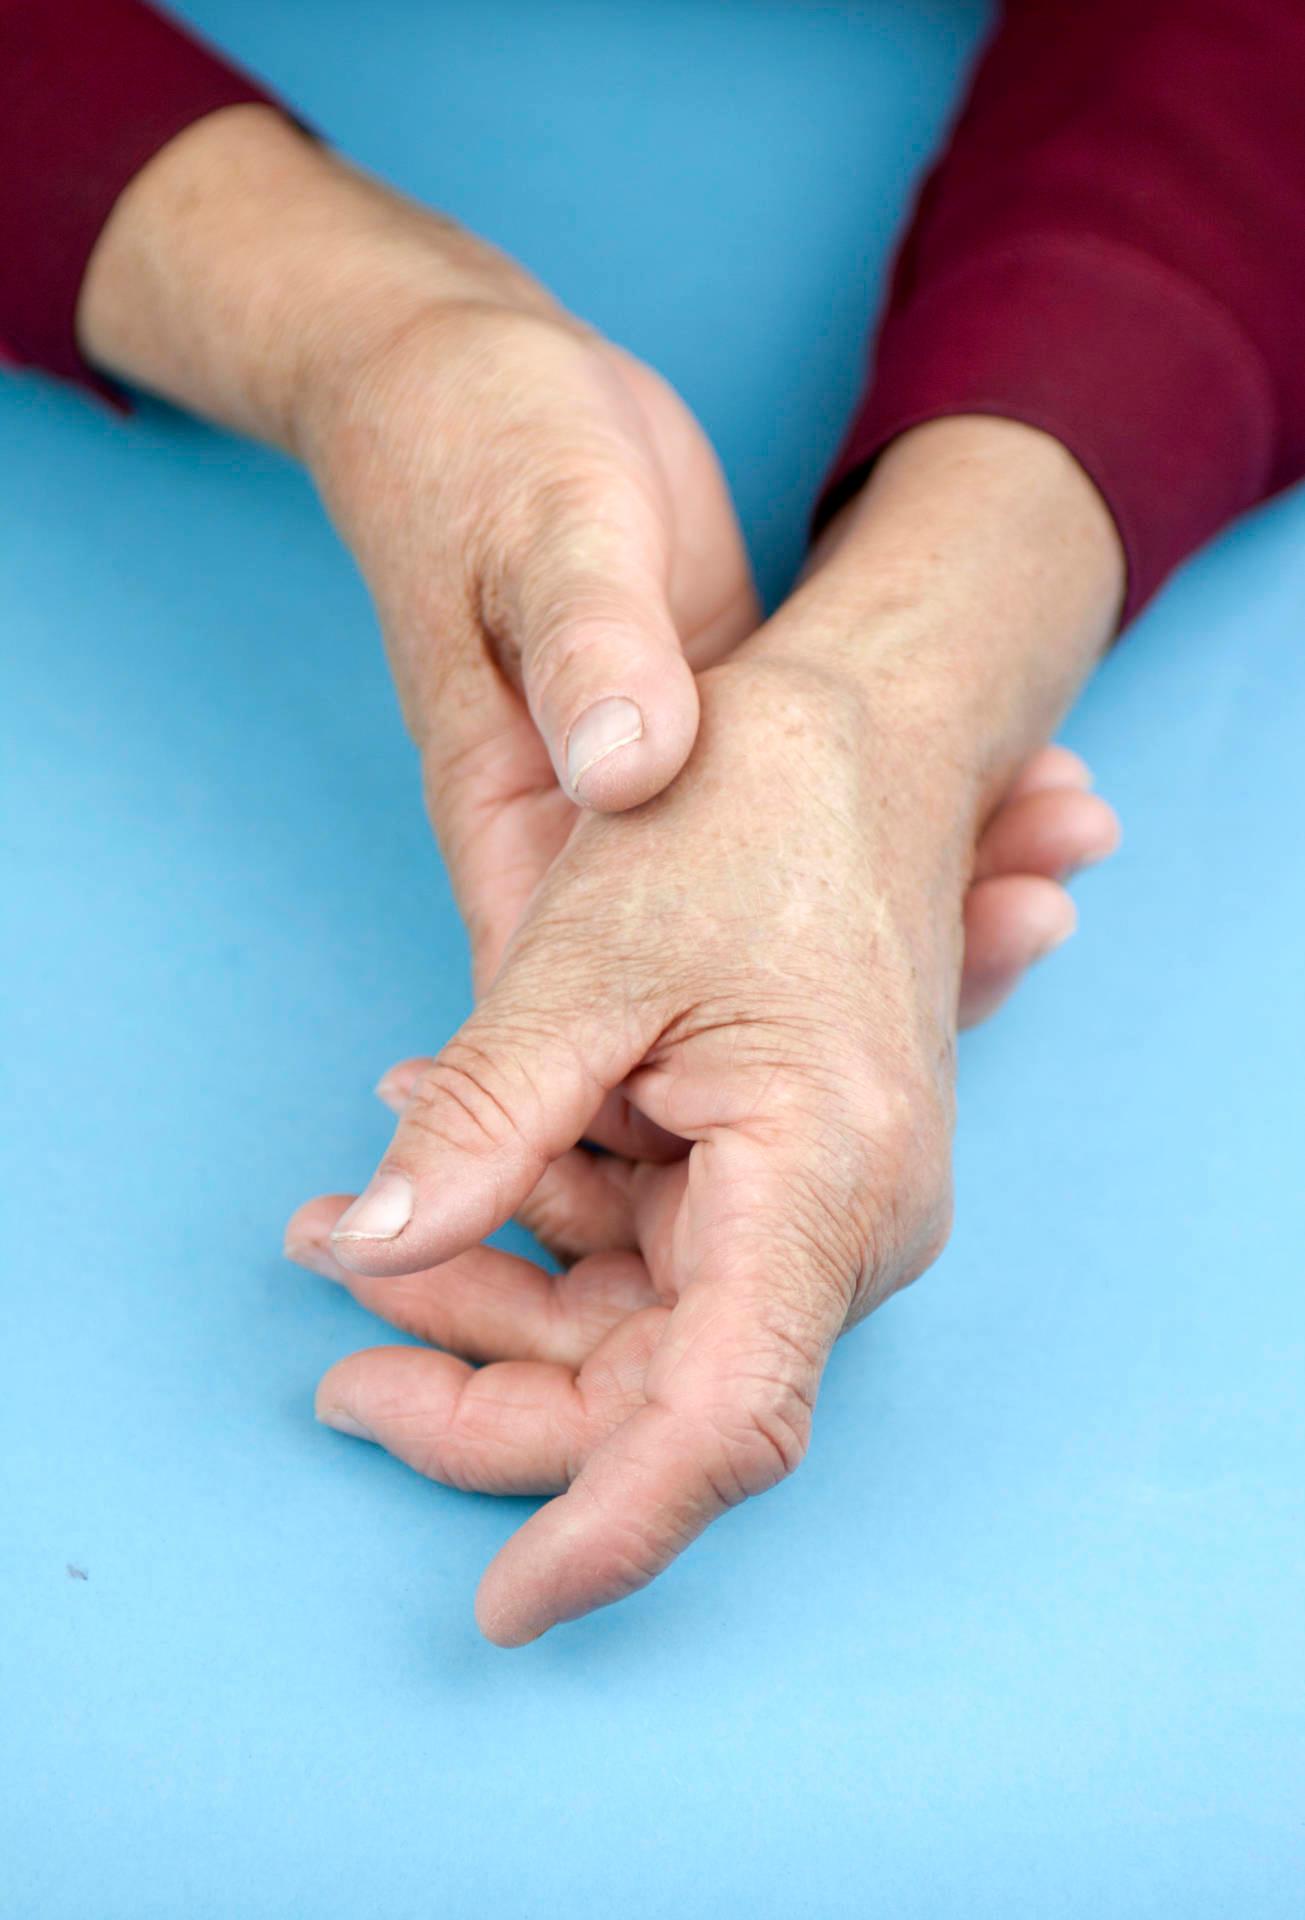 Hände einer Frau, die an rheumatoider Arthritis verformt ist